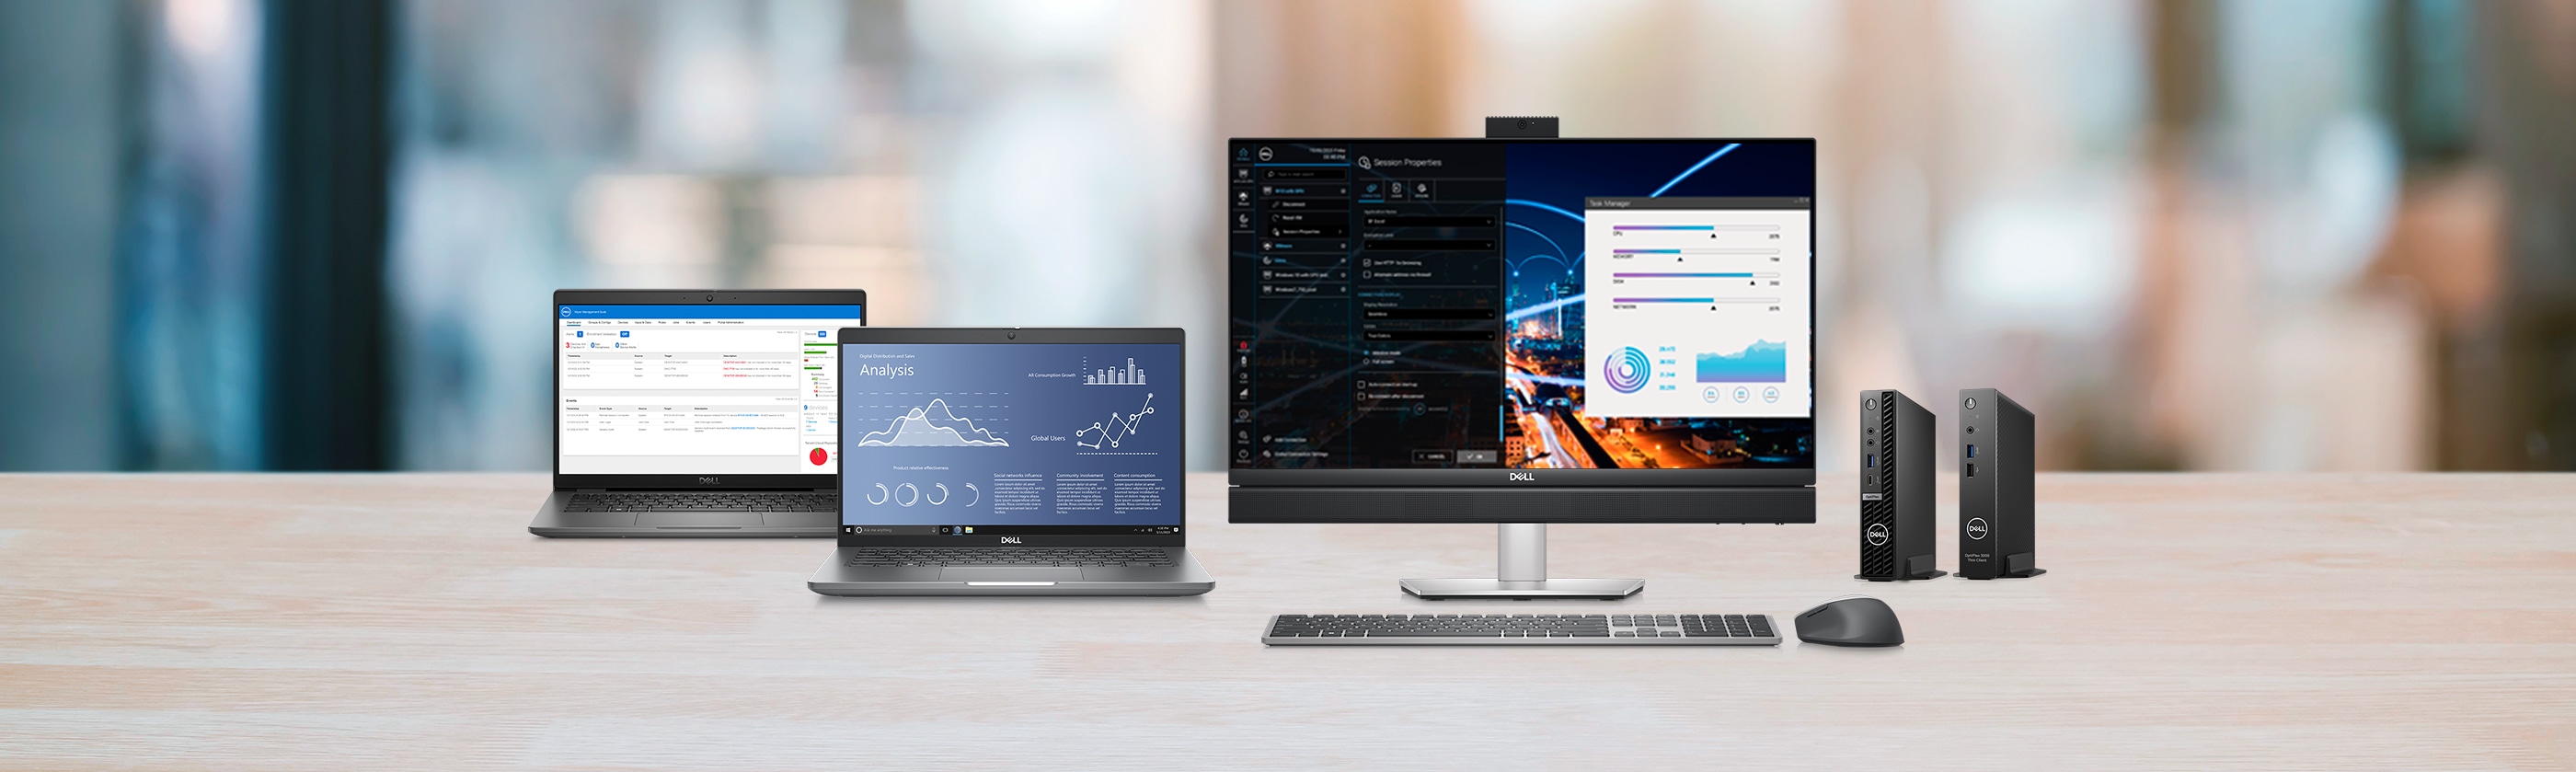 Windows® 10 IoT Enterprise: eine flexible, für Dell optimierte Softwareoption